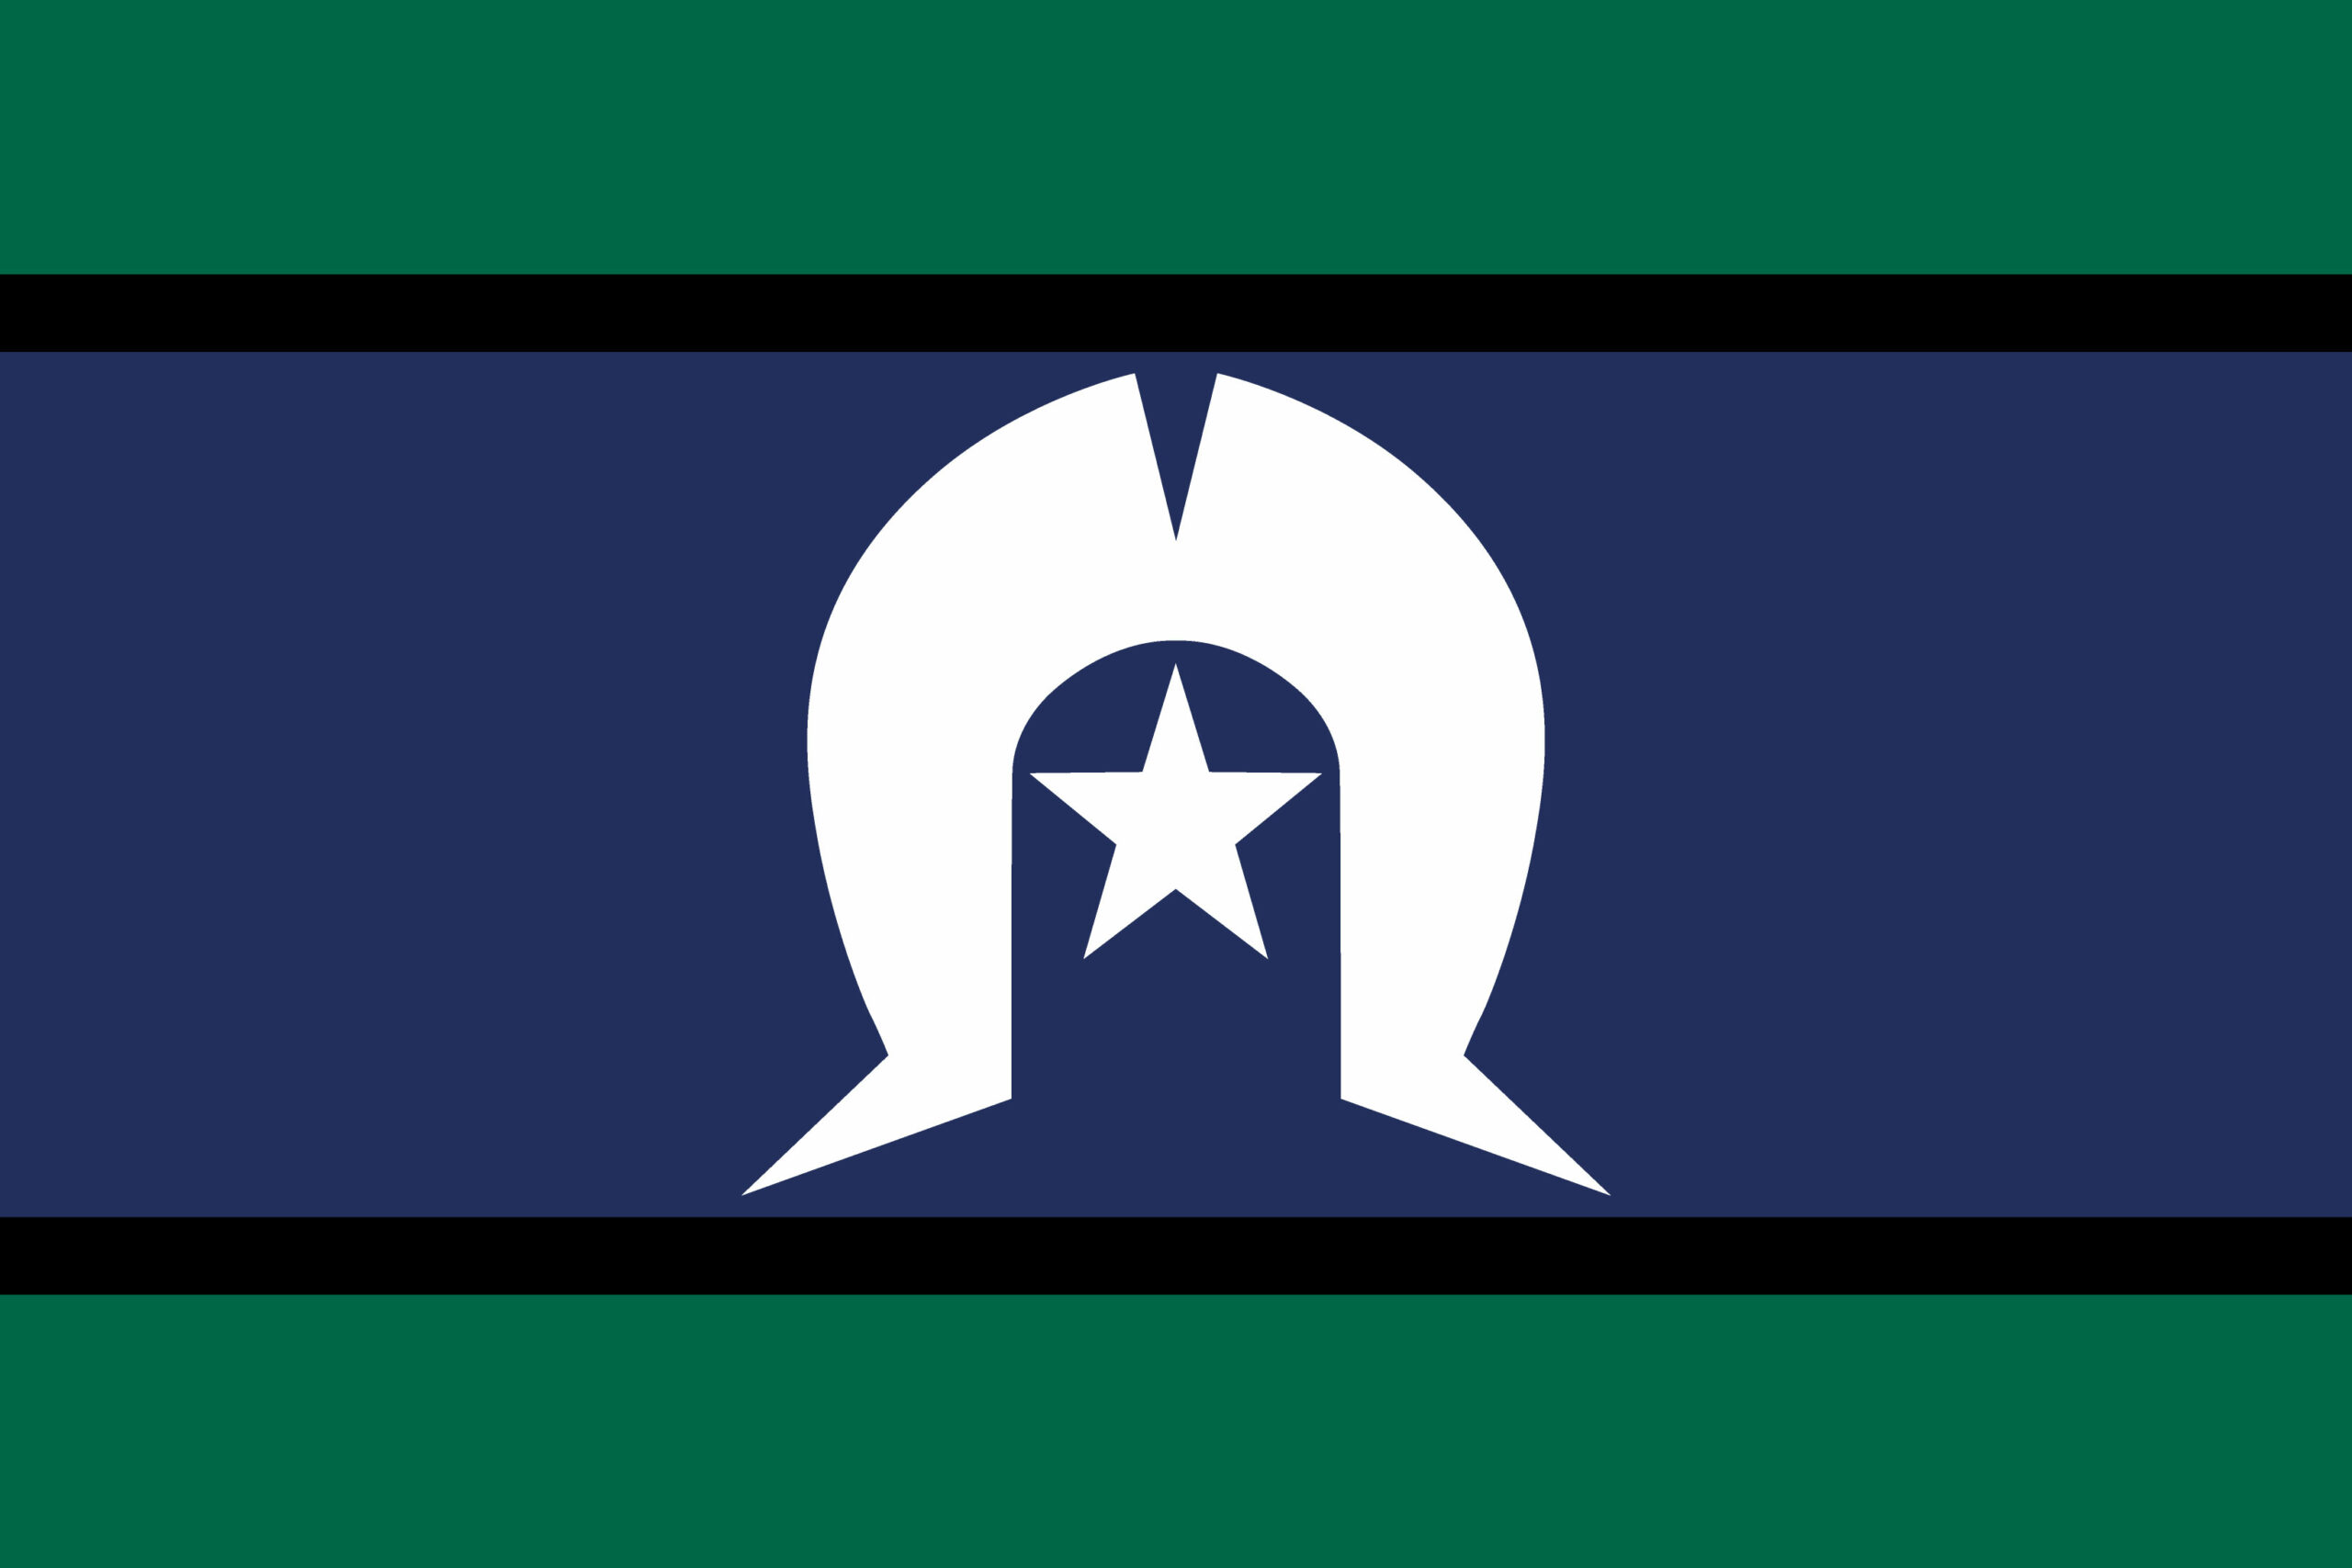 Torres-Strait-Islander-flag